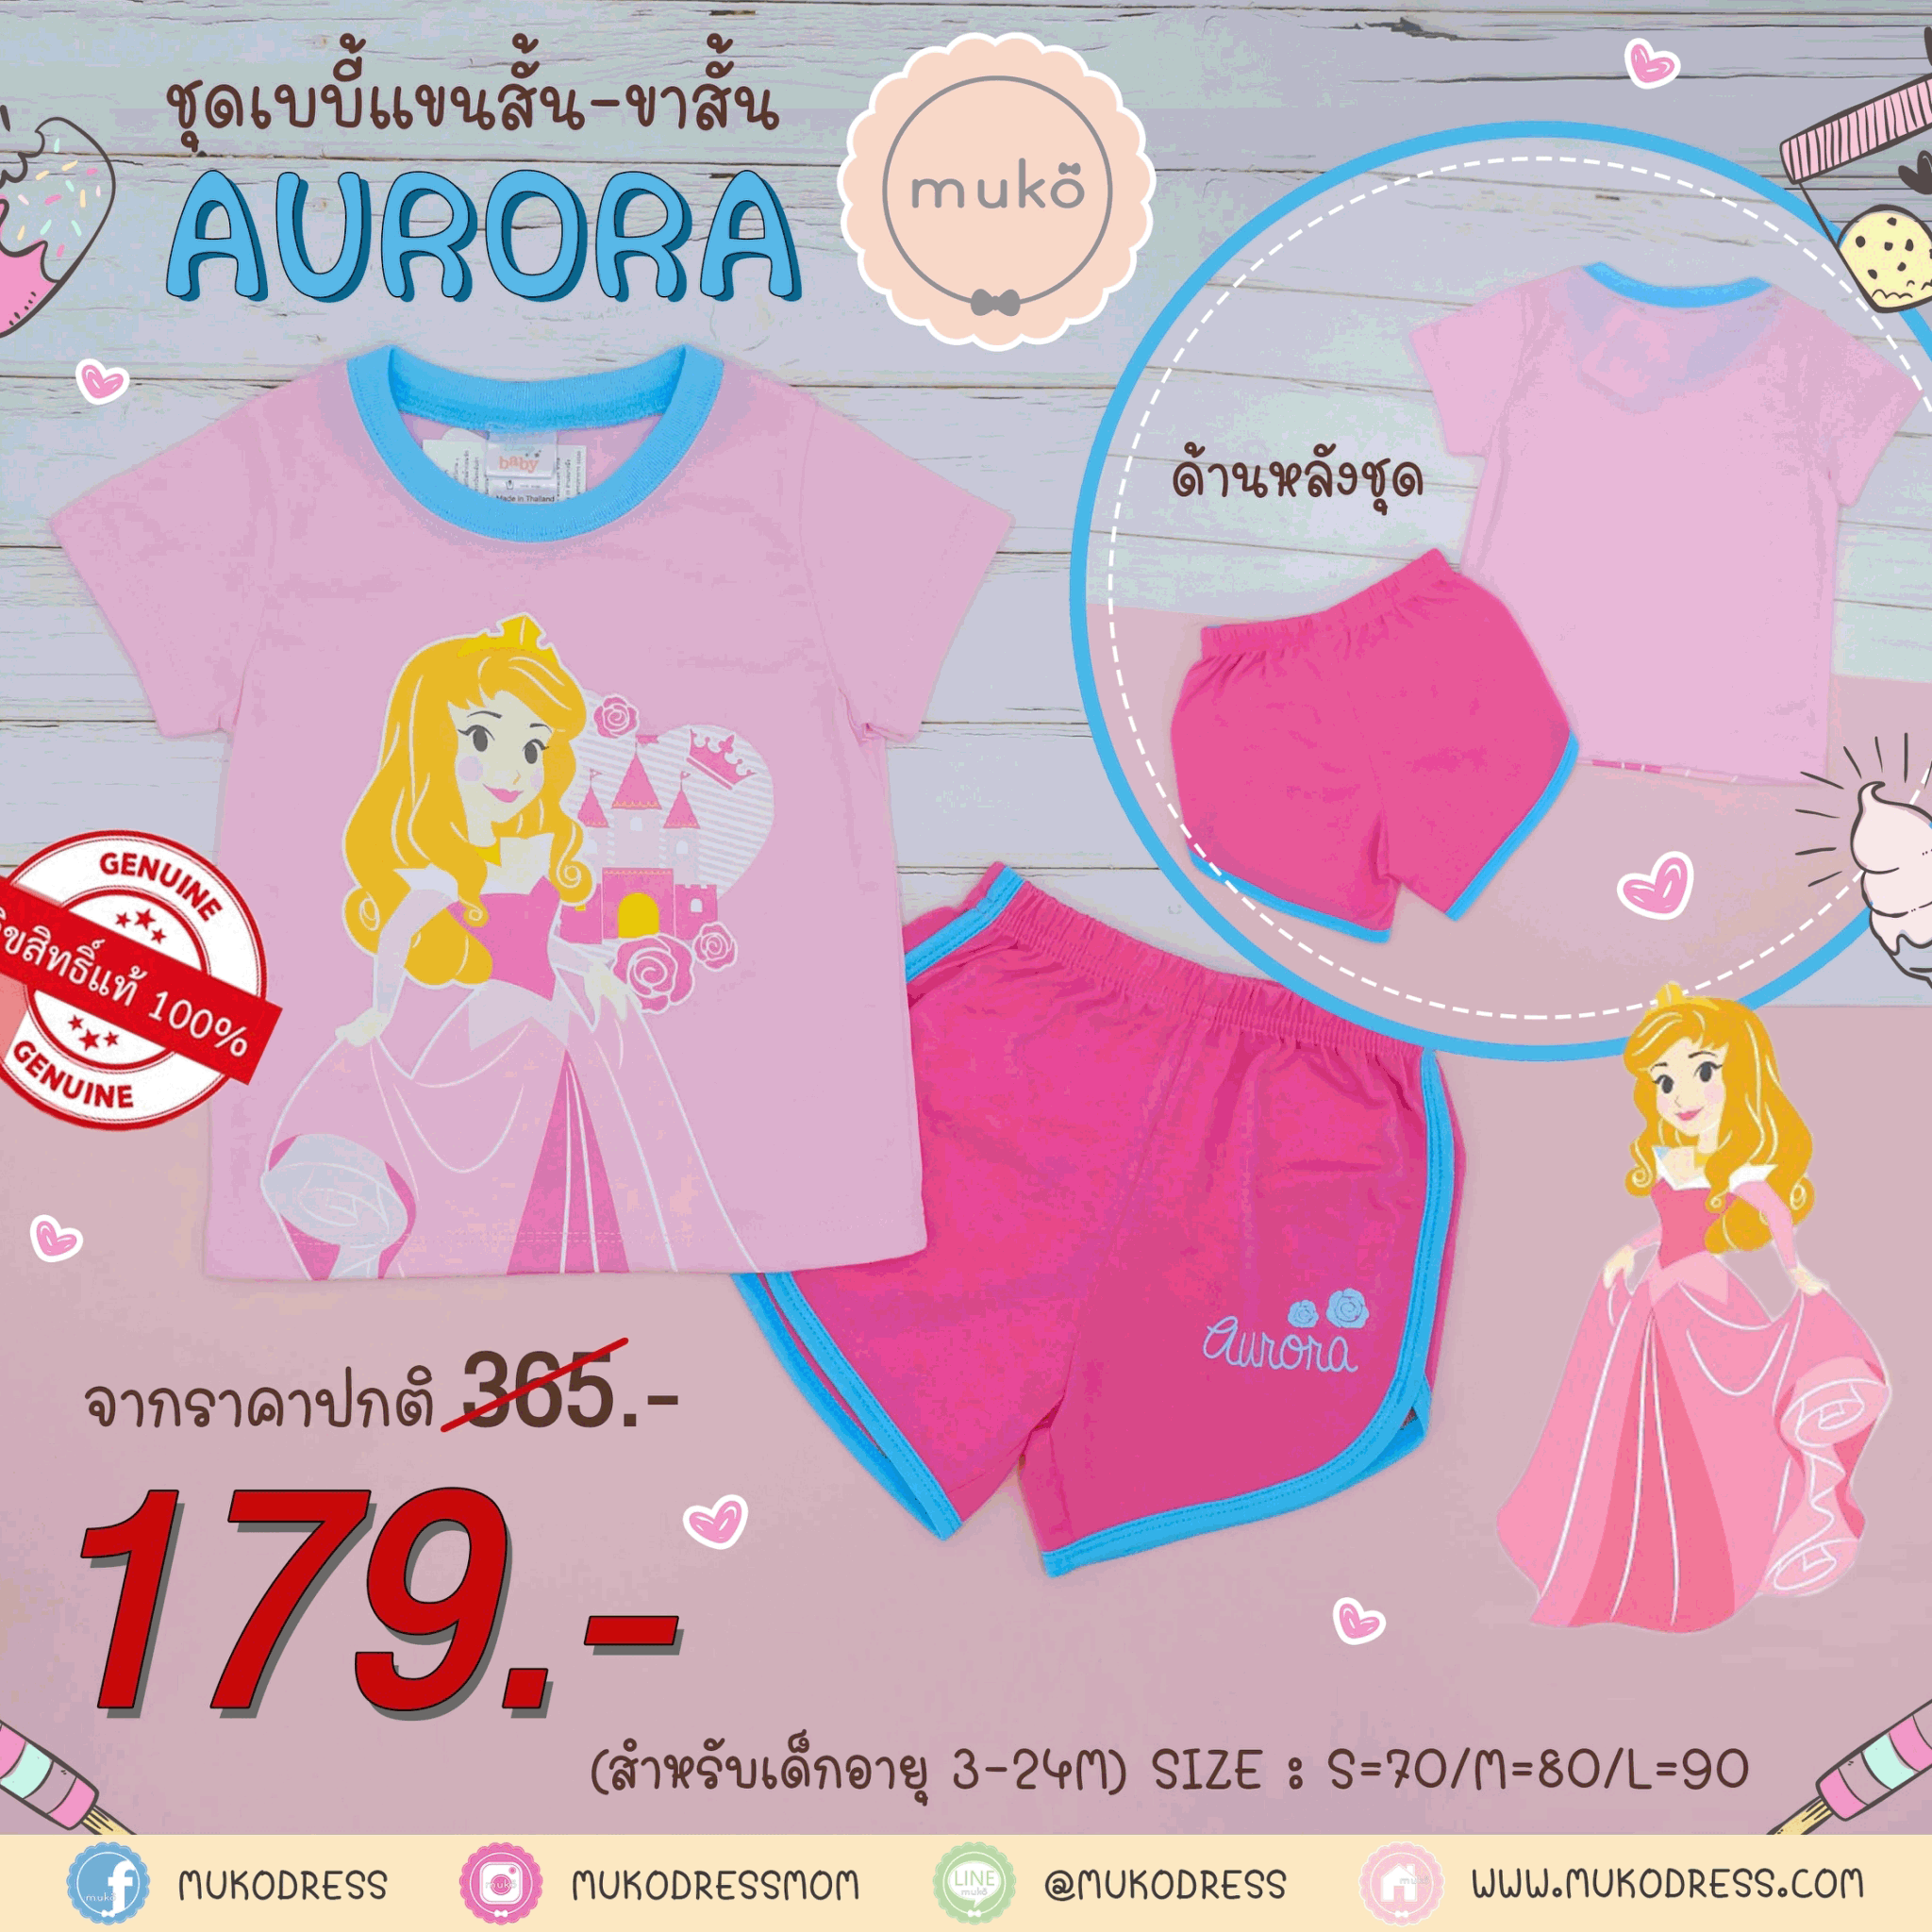 ชุดเบบี้ 6-12 เดือน แขนสั้น-ขาสั้น (M=80) DPC017-01-L-Pink M ลายเจ้าหญิงออโรร่า Aurora